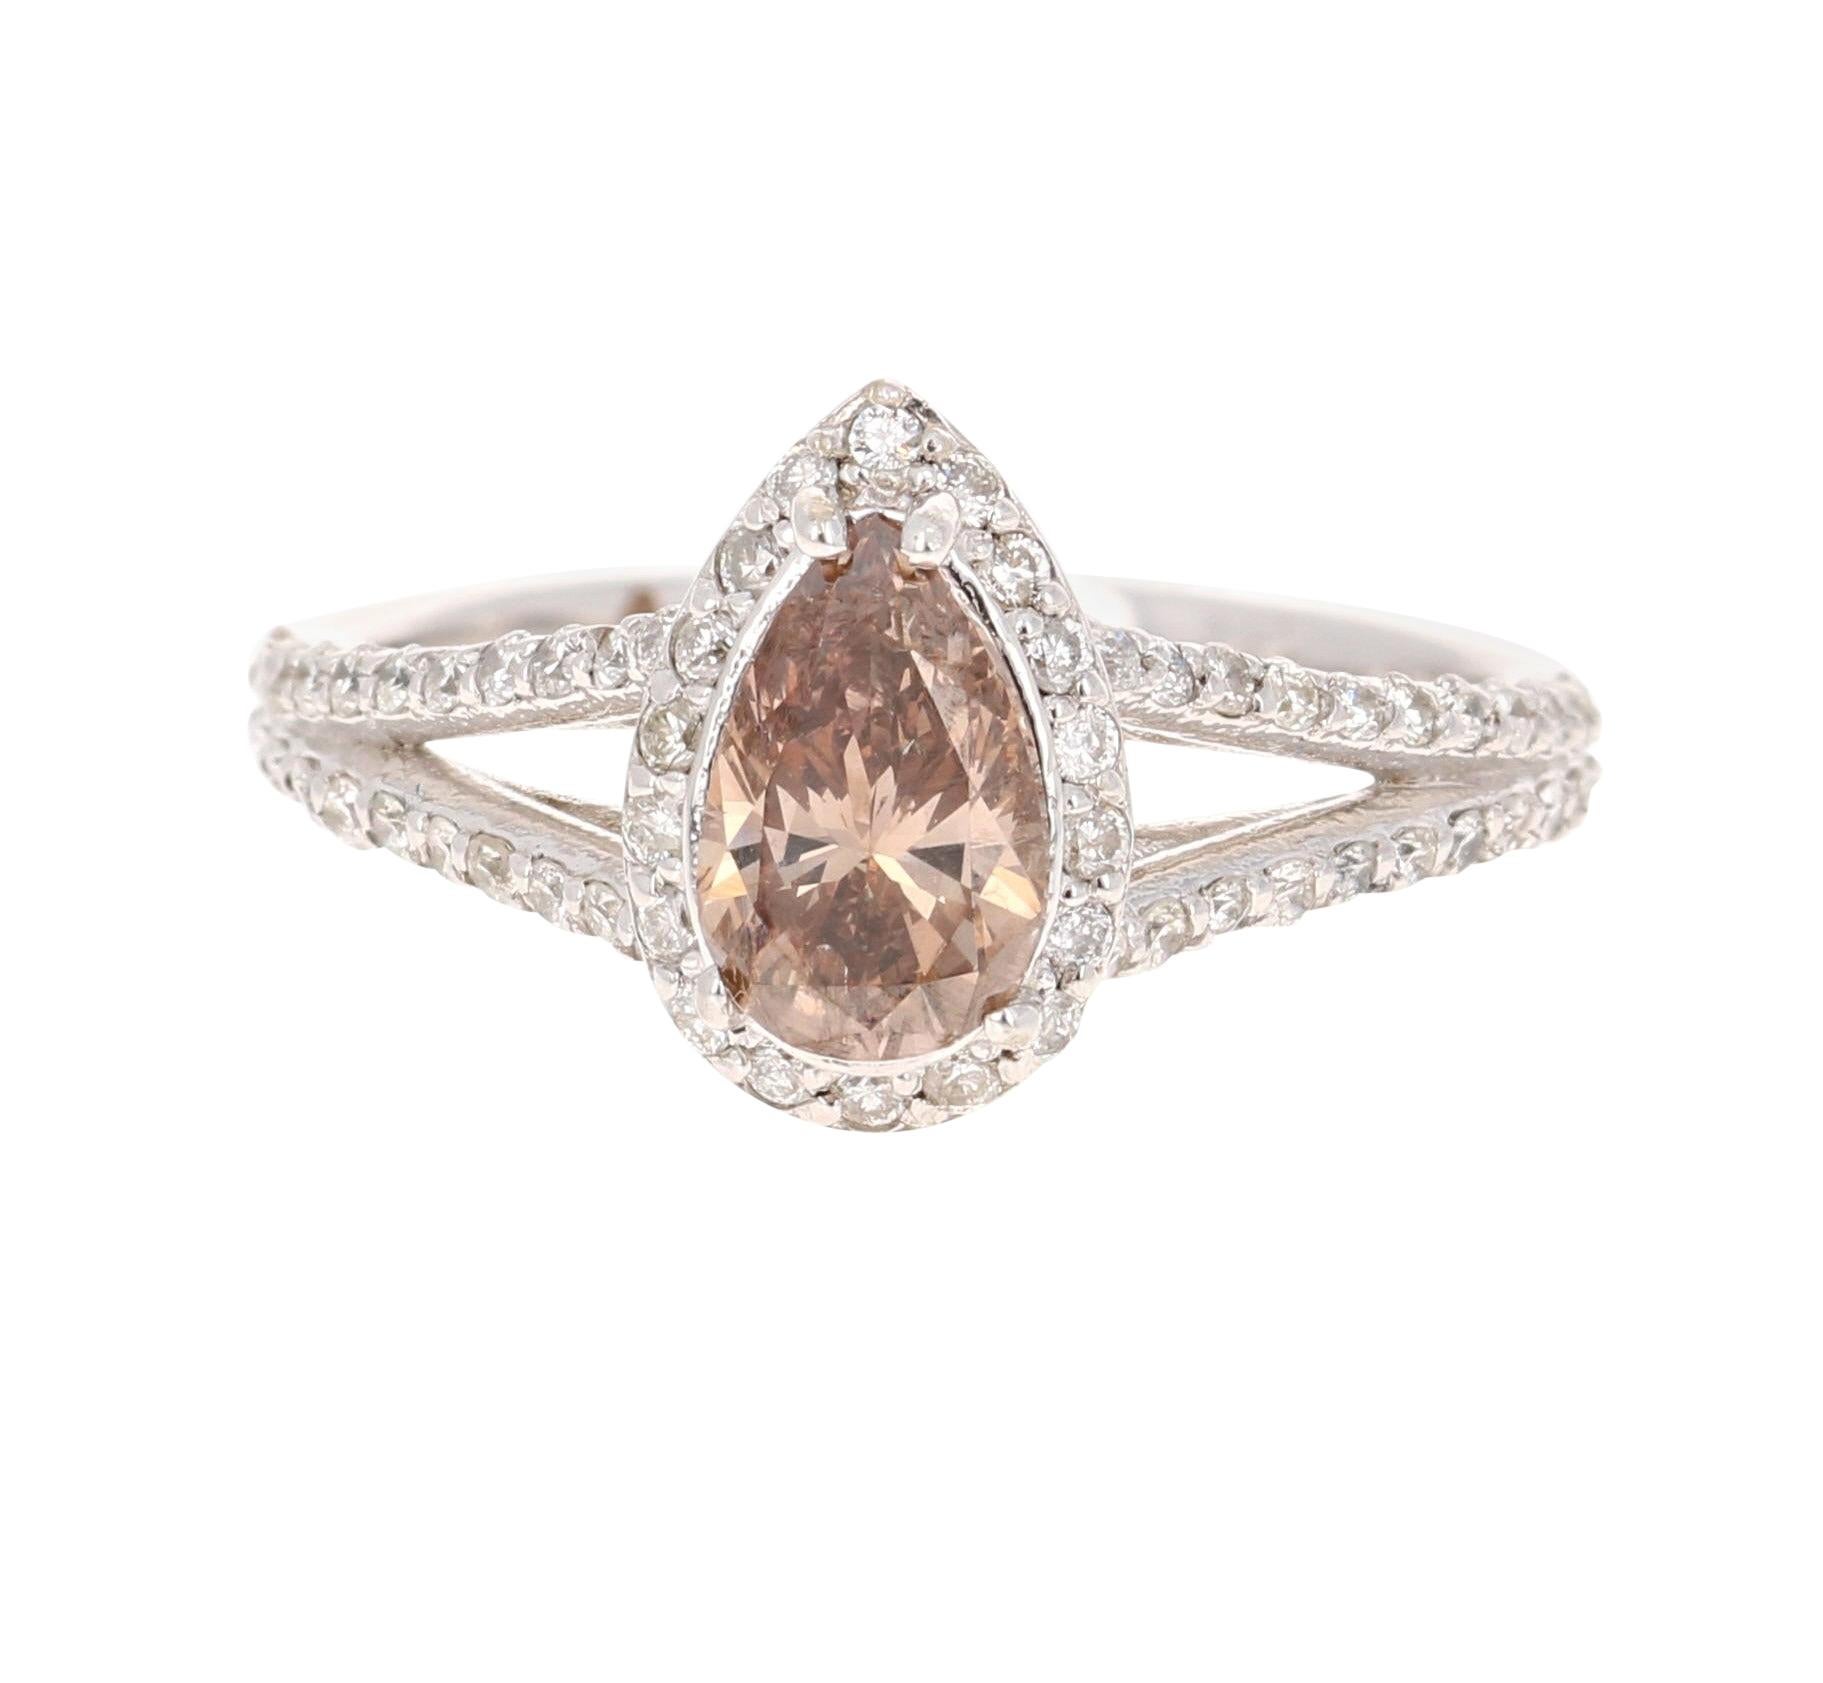 1.58 Carat Natural Fancy Brown Diamond Engagement 14 Karat White Gold Ring